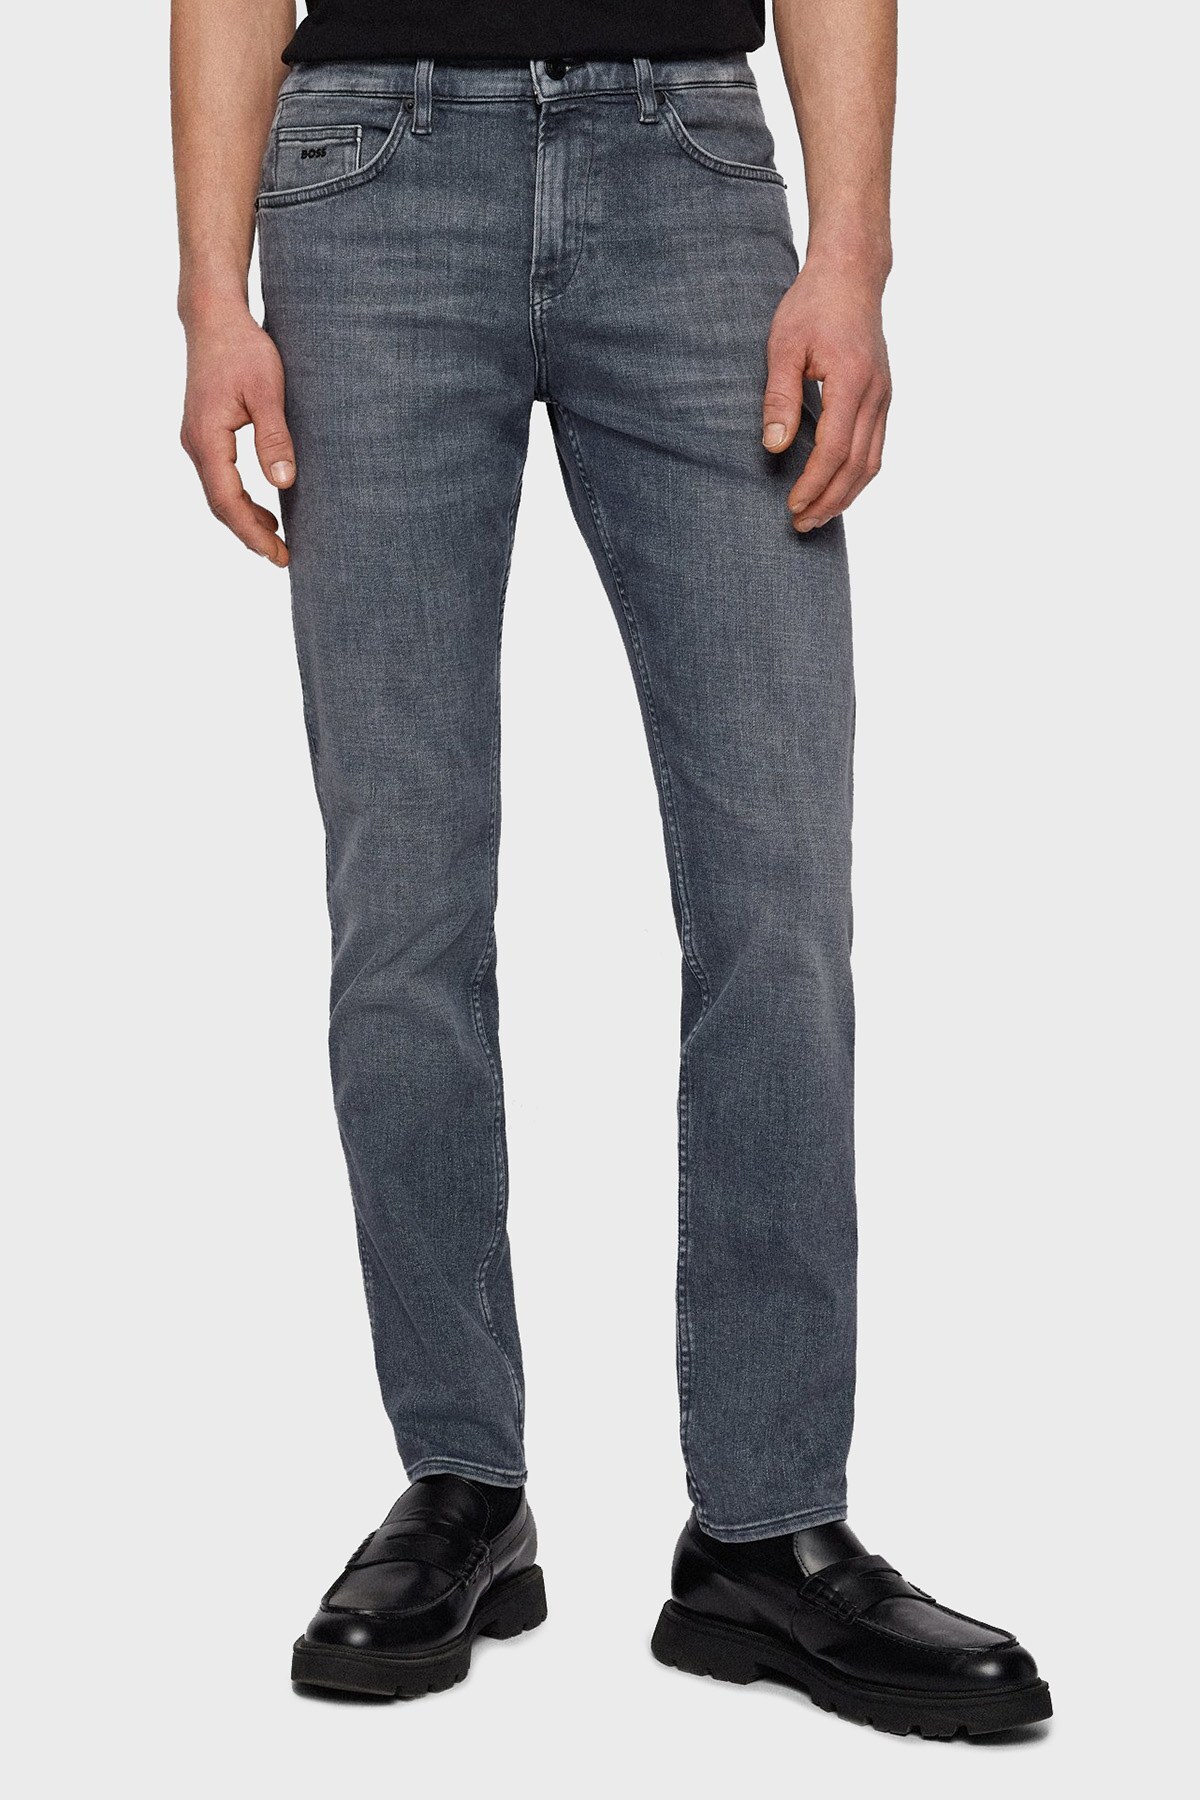 Boss Pamuklu Normal Bel Slim Fit Jeans Erkek Kot Pantolon 50470490 030 GRİ